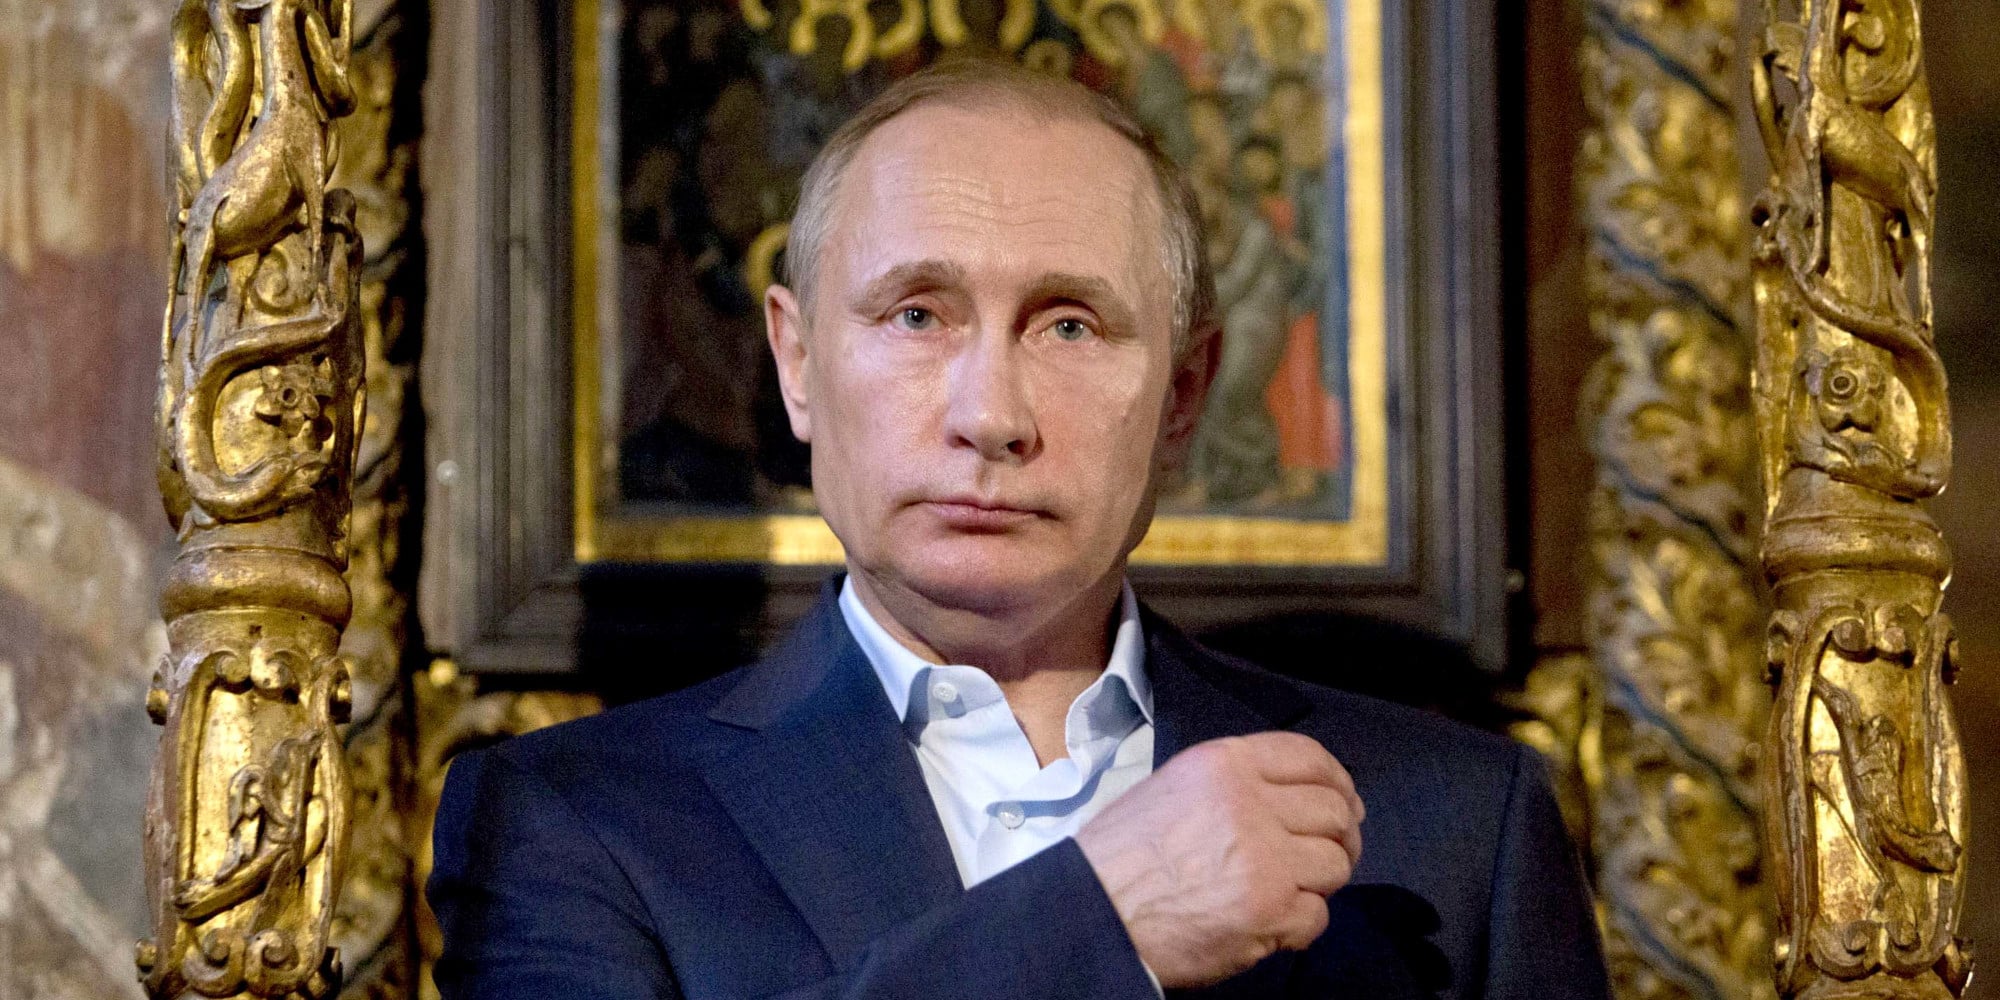 Ο πρόεδρος της Ρωσίας Βλαντίμιρ Πούτιν